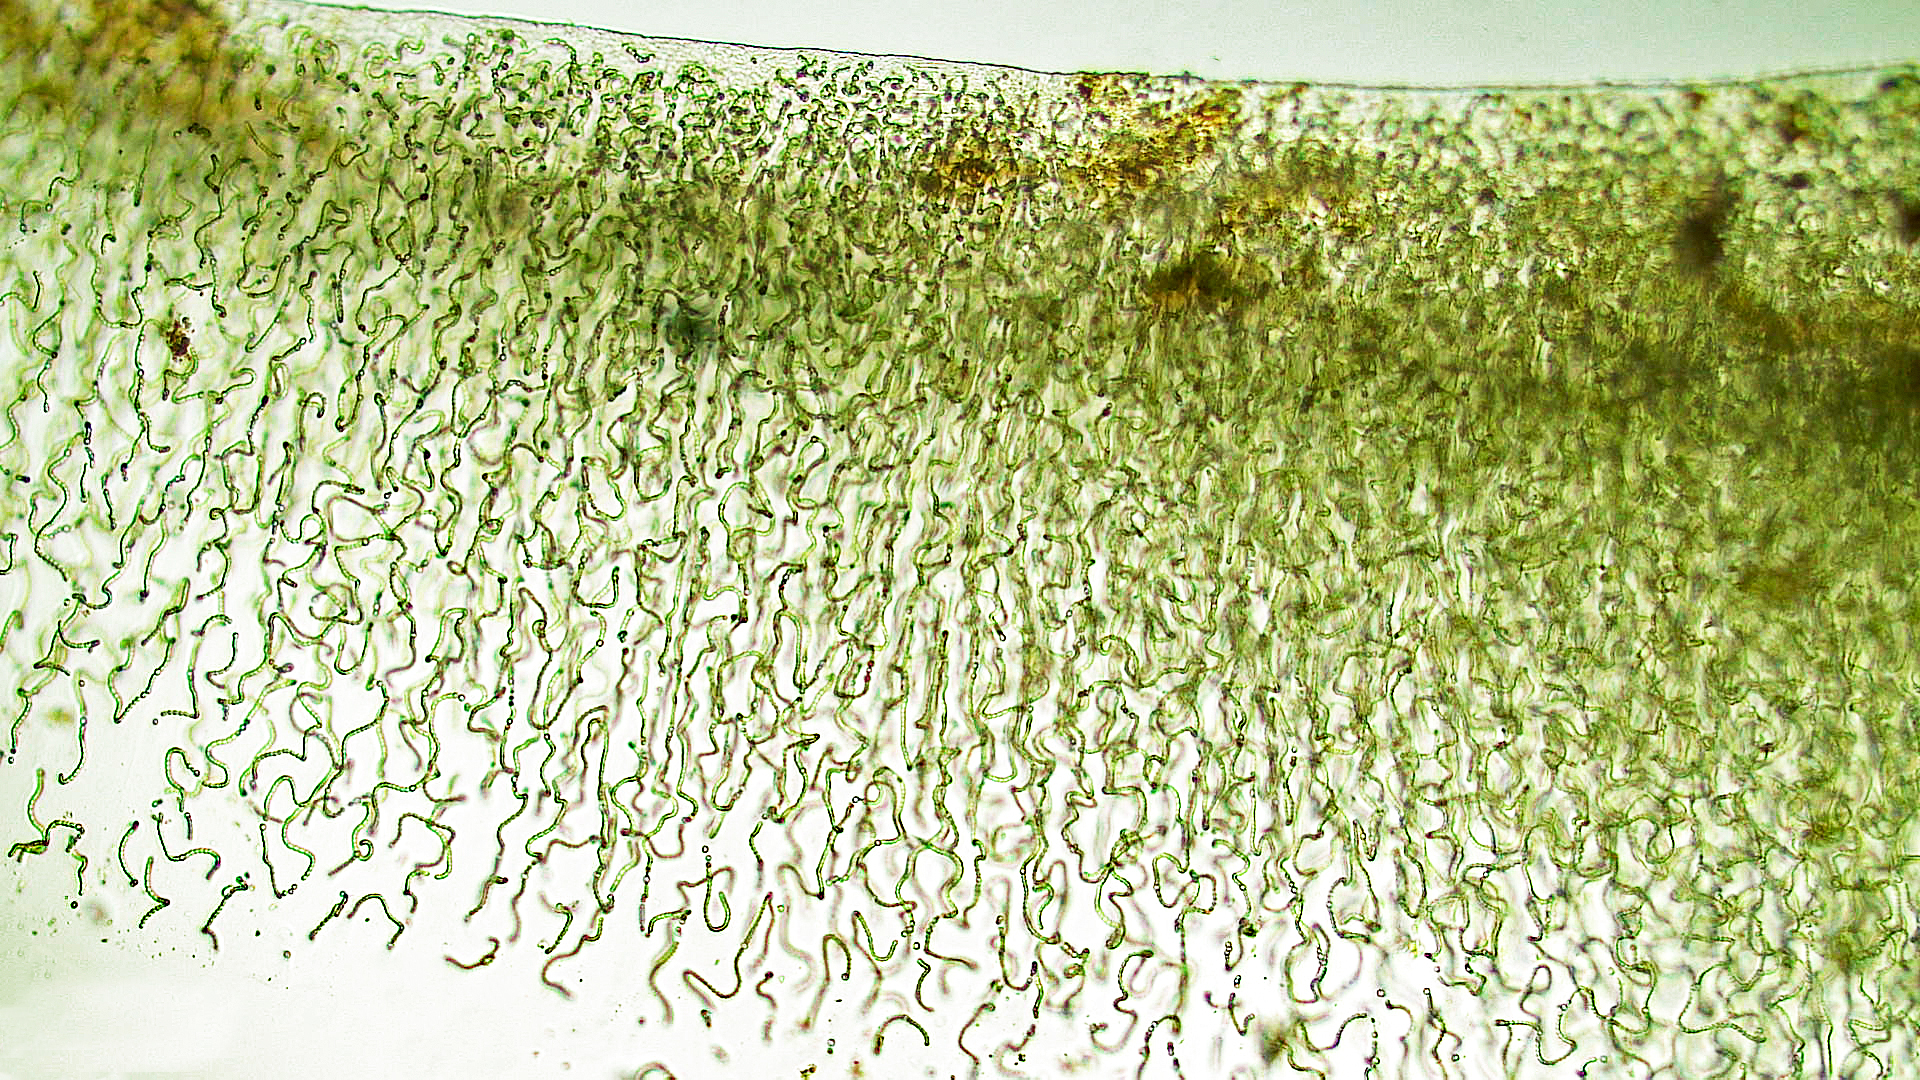 ./././Cyanobacteria/Nostocales/Nostocaceae/Nostoc/pruniforme/nostoc-pruniforme-3.jpg